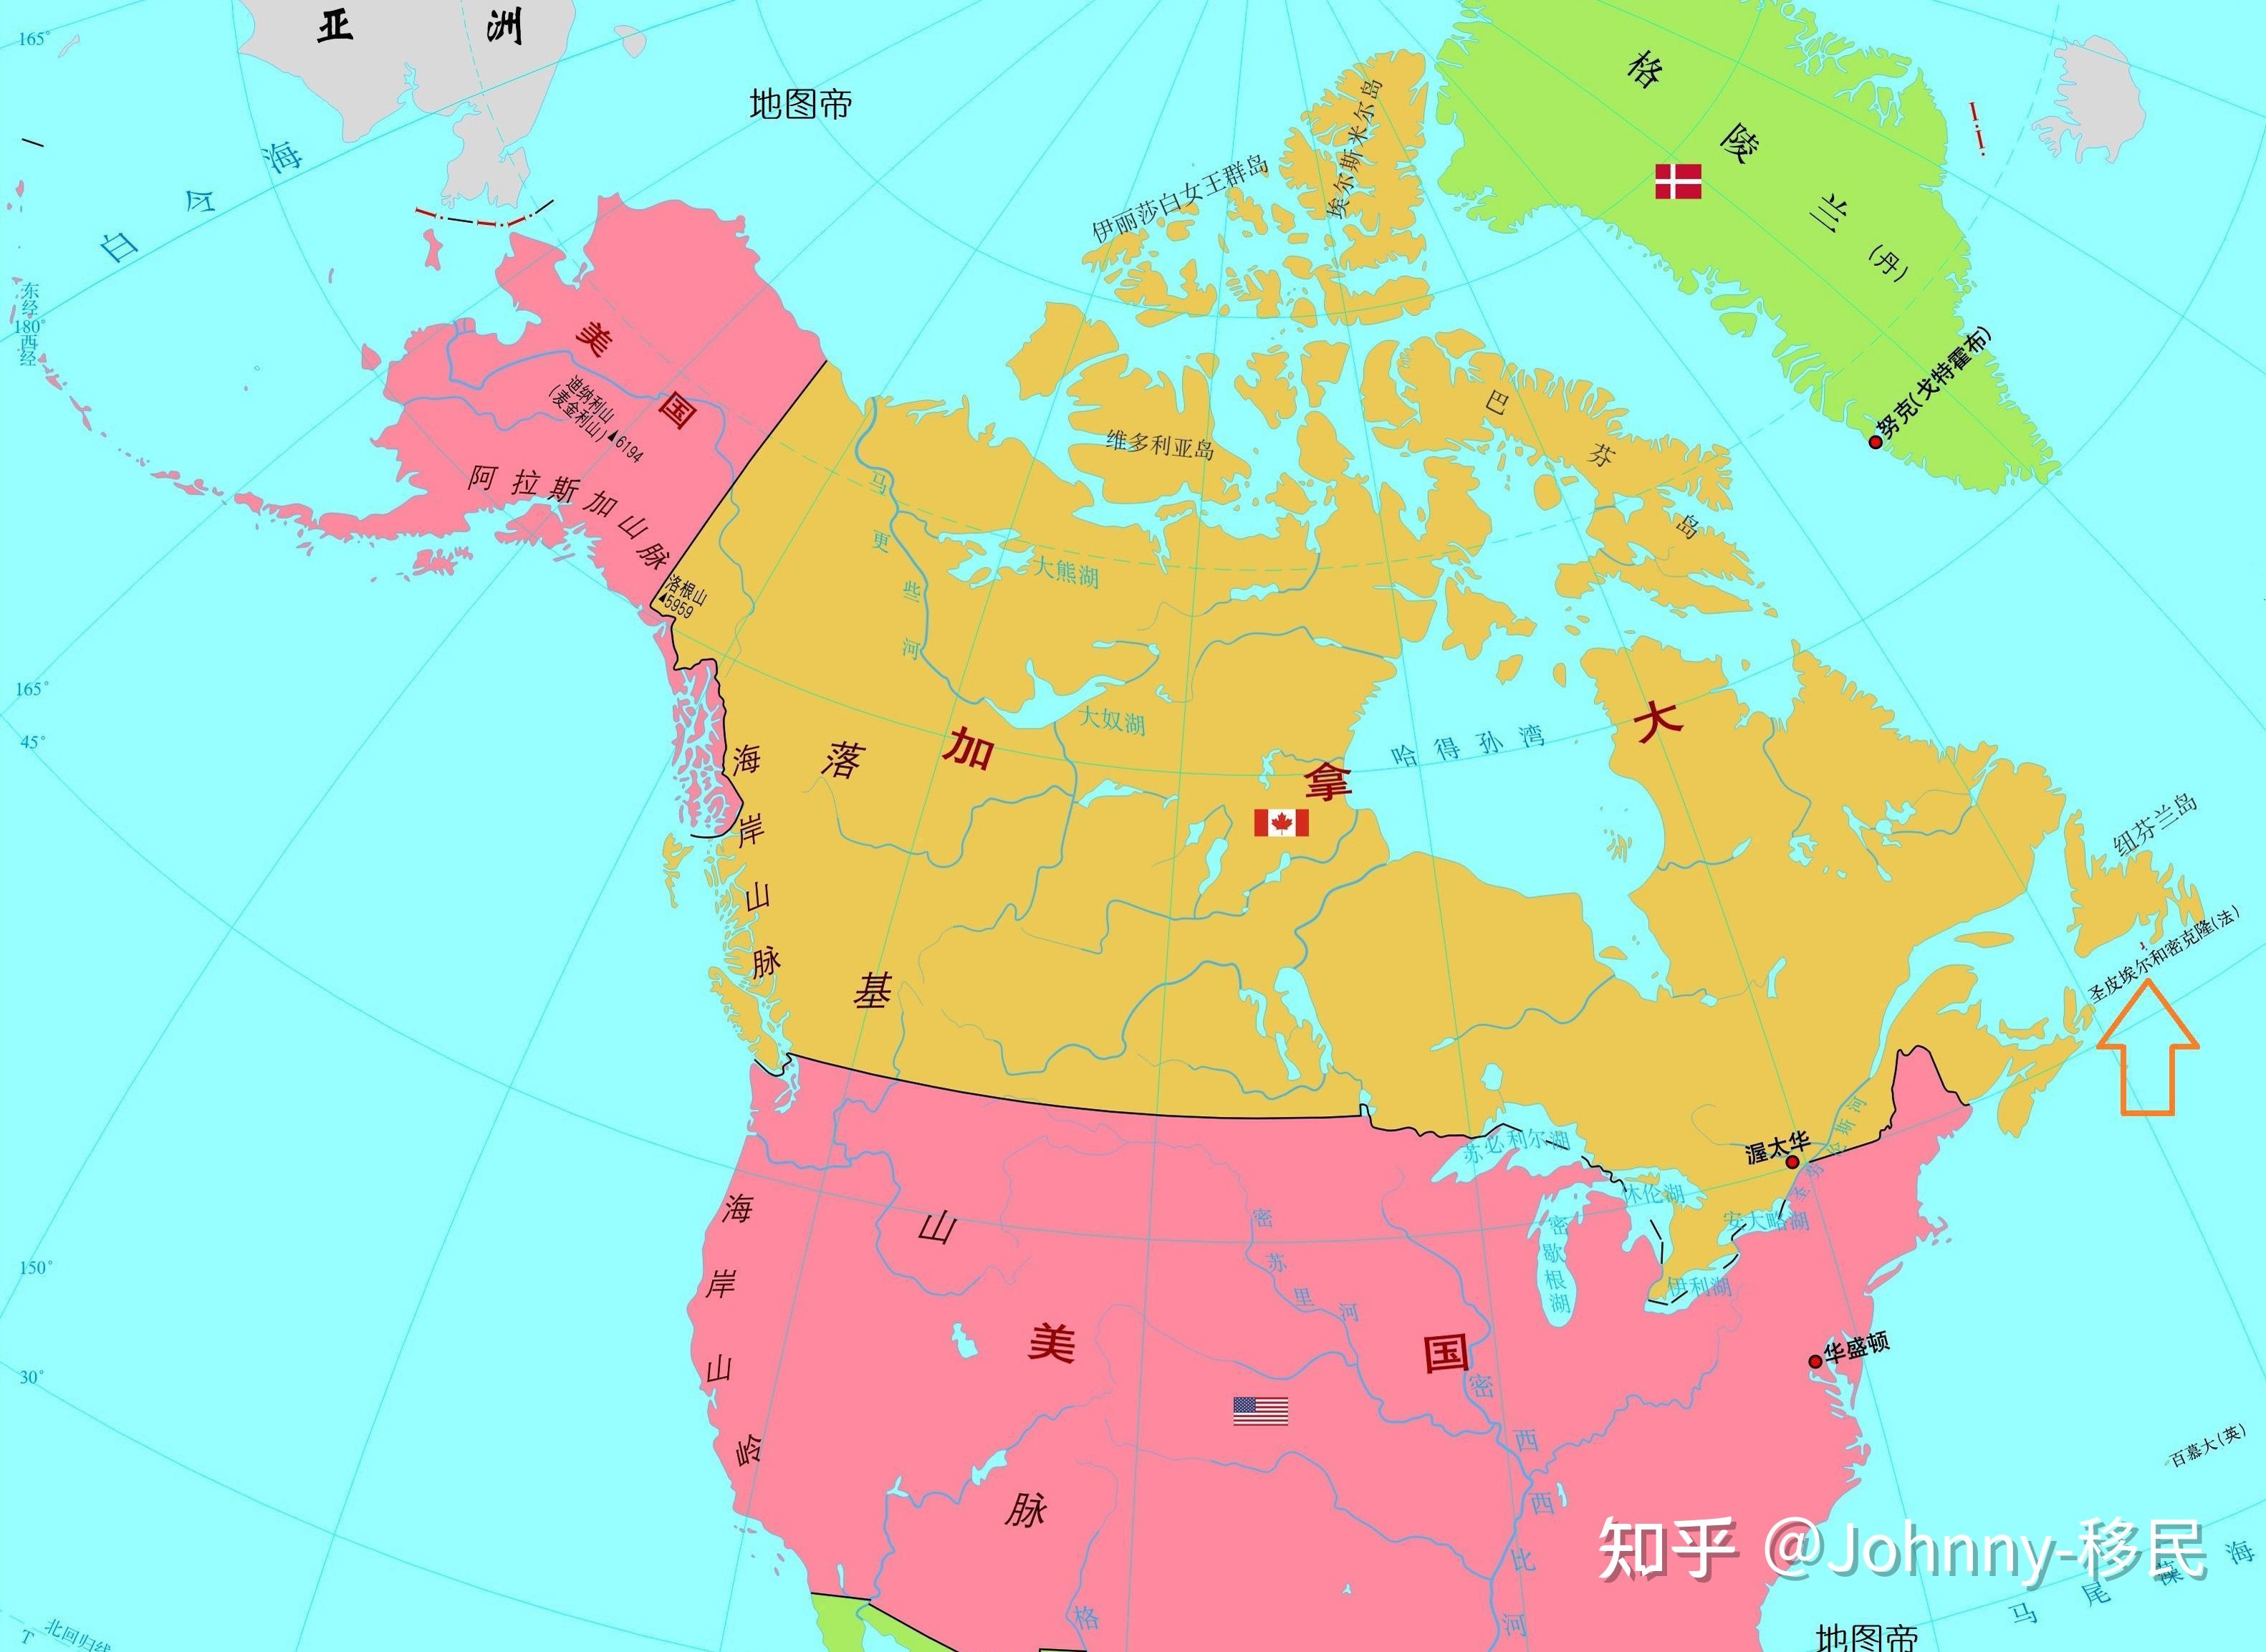 加拿大地理位置简介图片